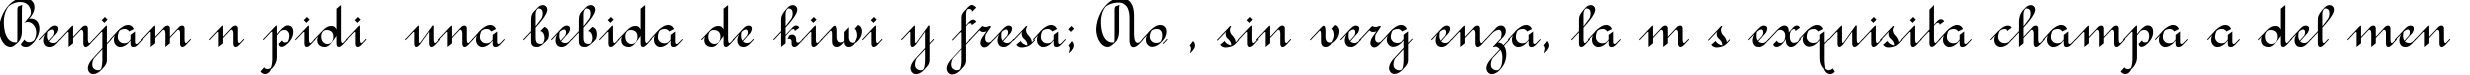 Пример написания шрифтом Rondo Calligraphic текста на испанском